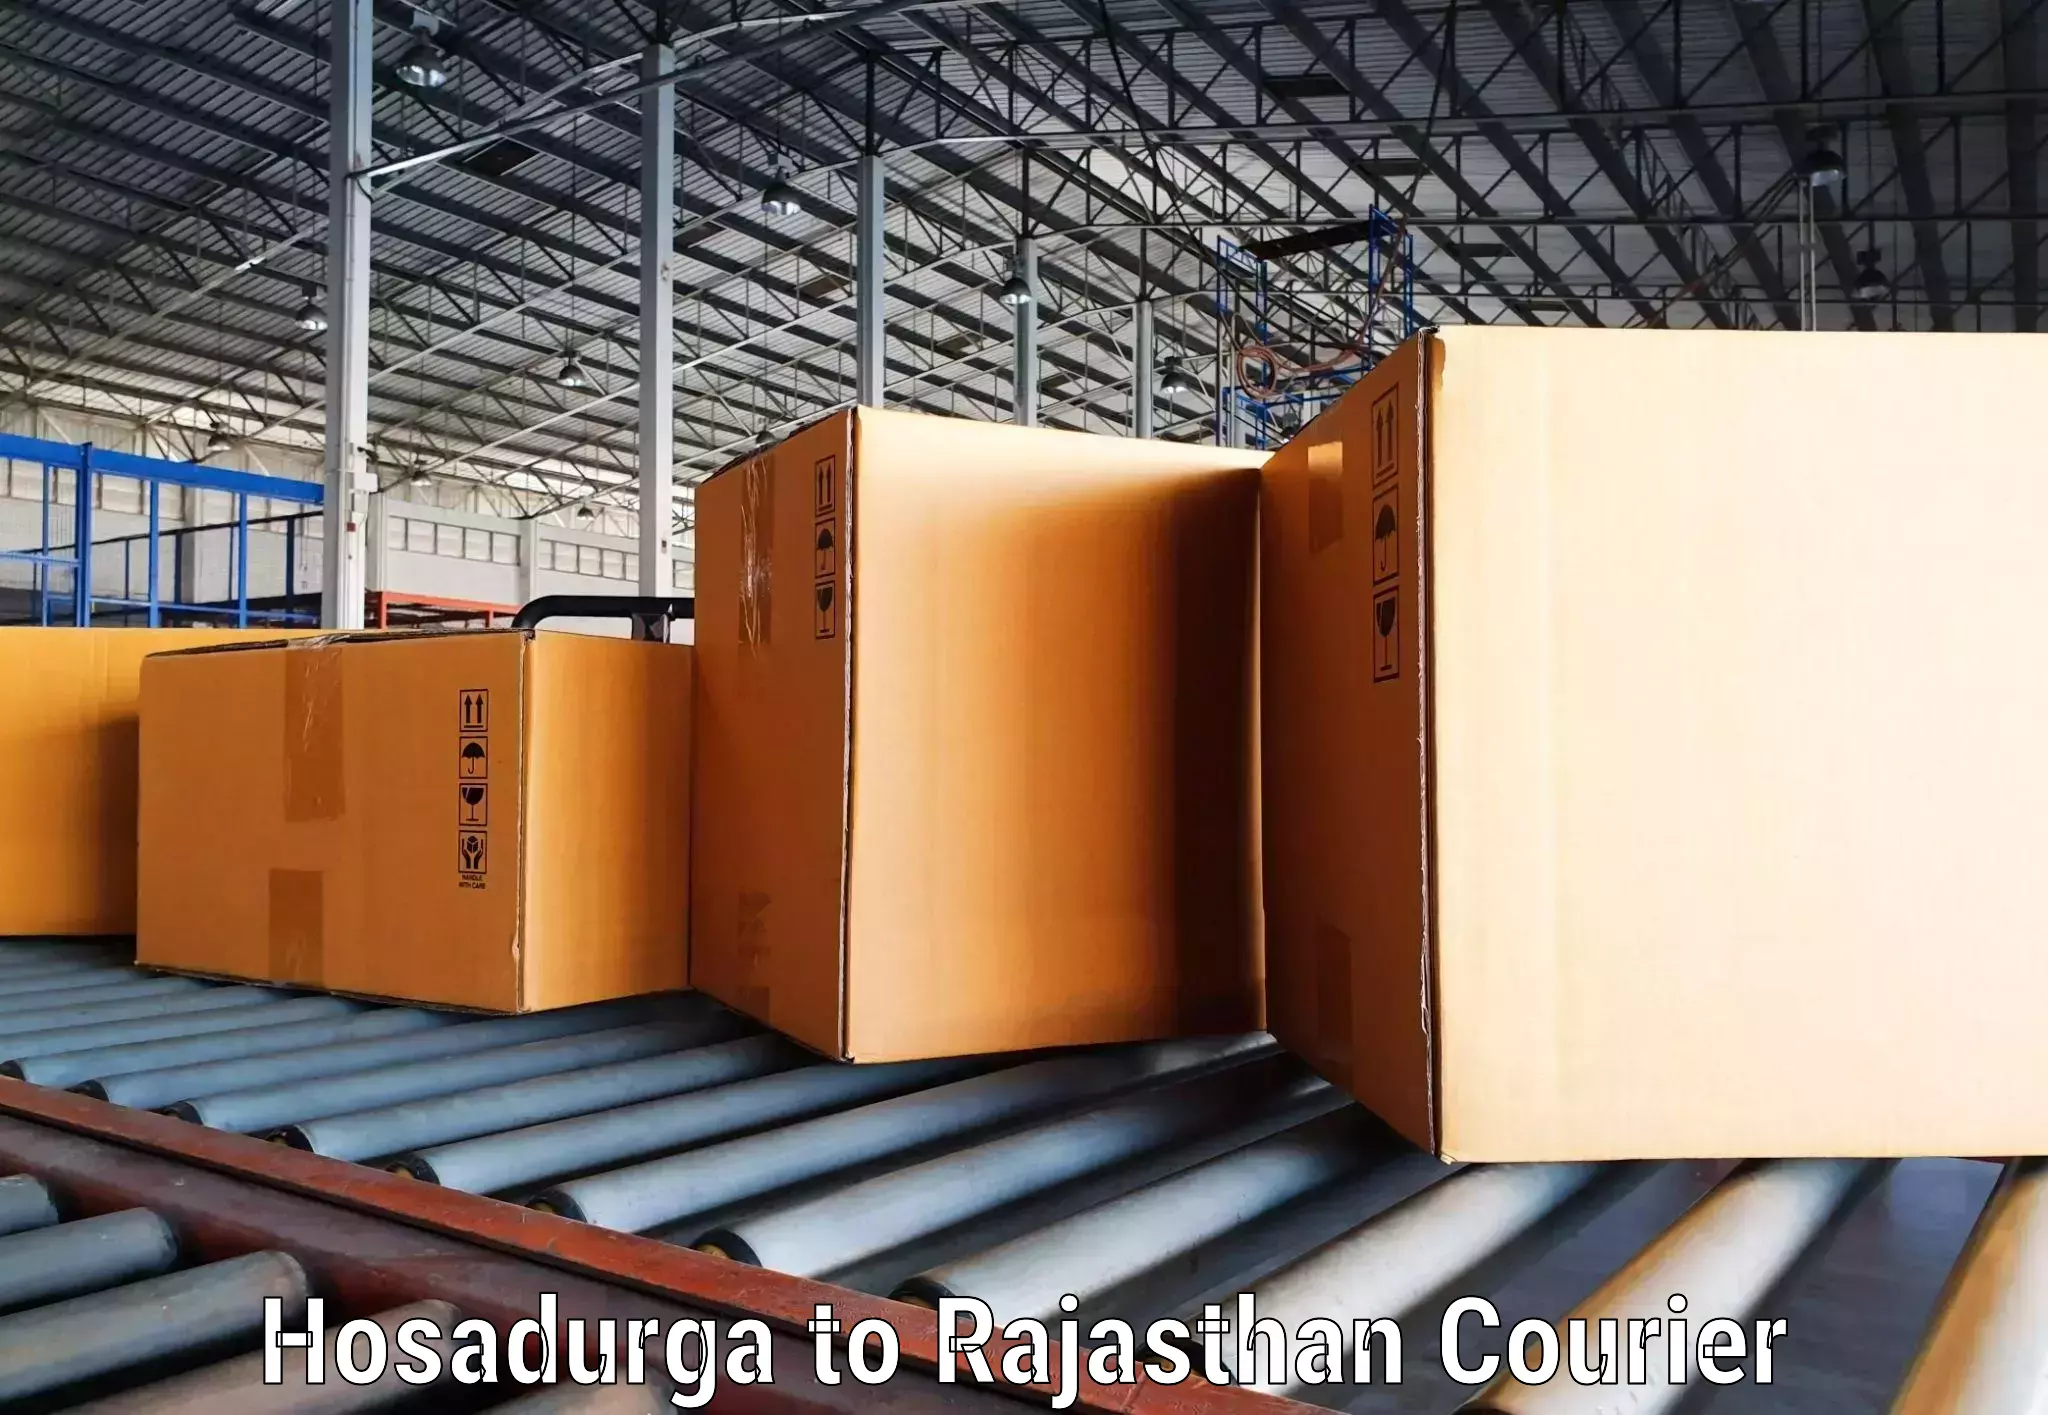 Customizable shipping options Hosadurga to Mathania